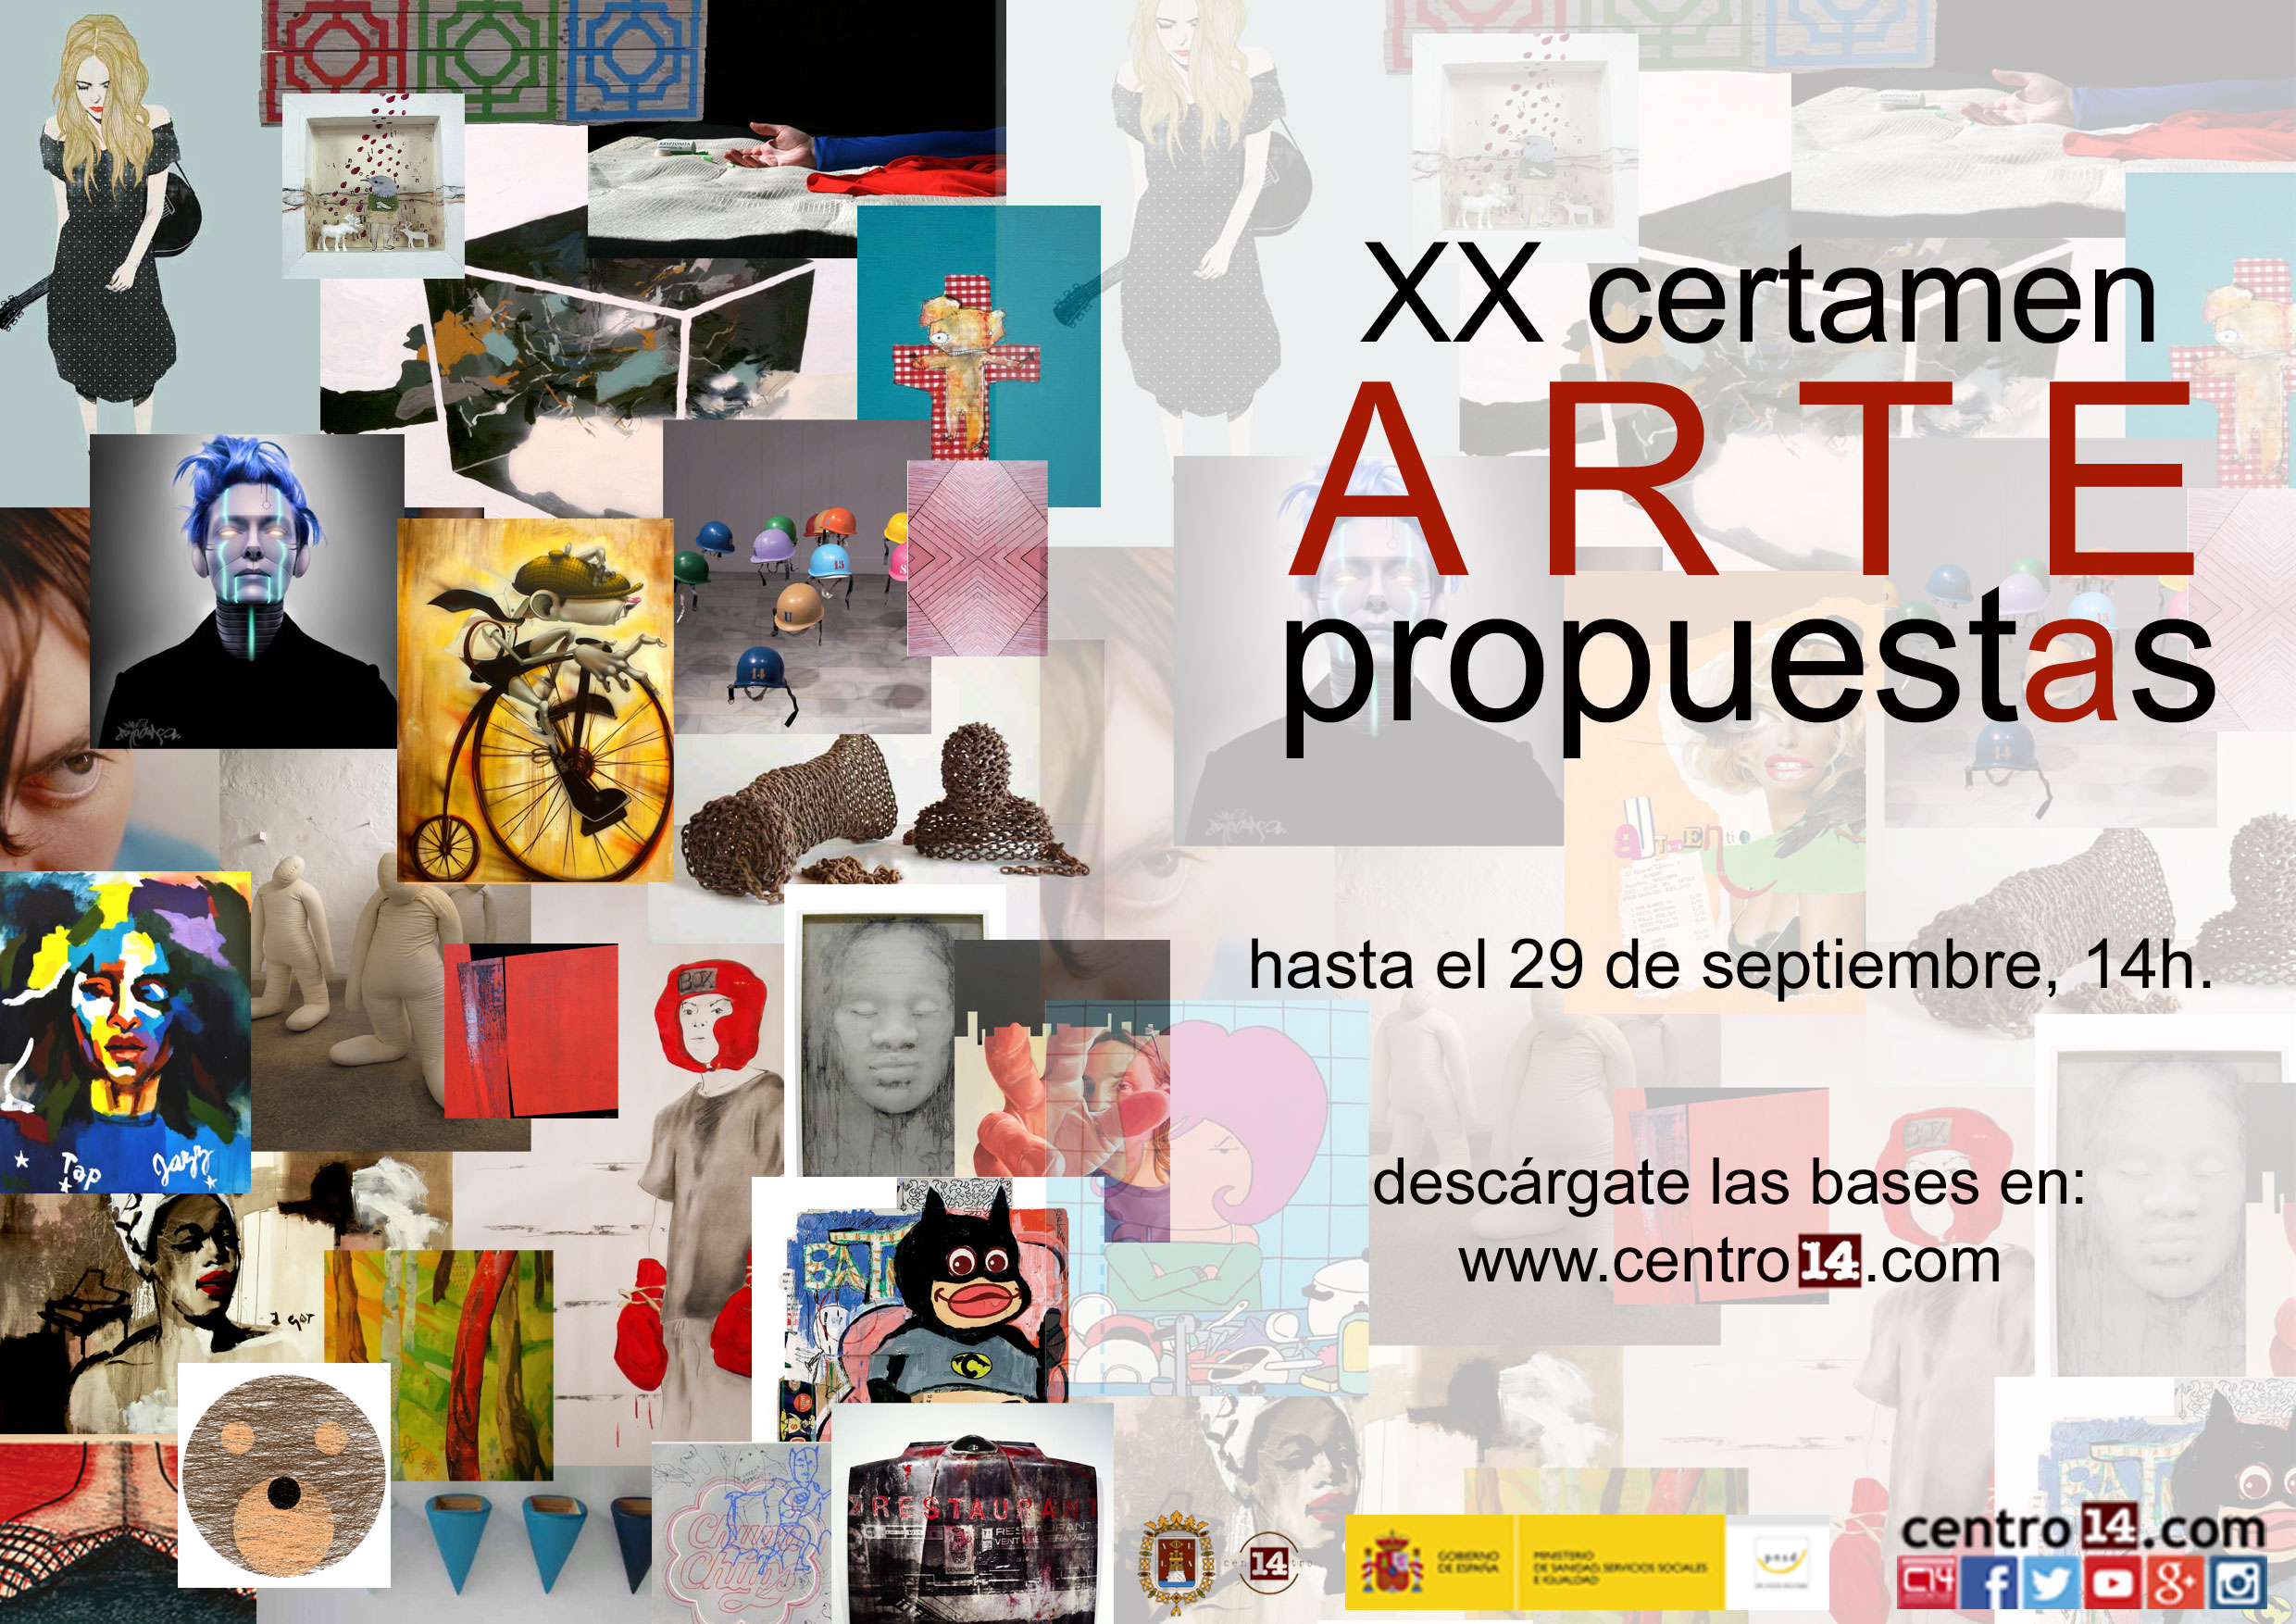 http://www.alicante.es/sites/default/files/imagenes/concursos/xx-concurso-arte-propuestas-proximamente-bases-2017/arte2016.jpg